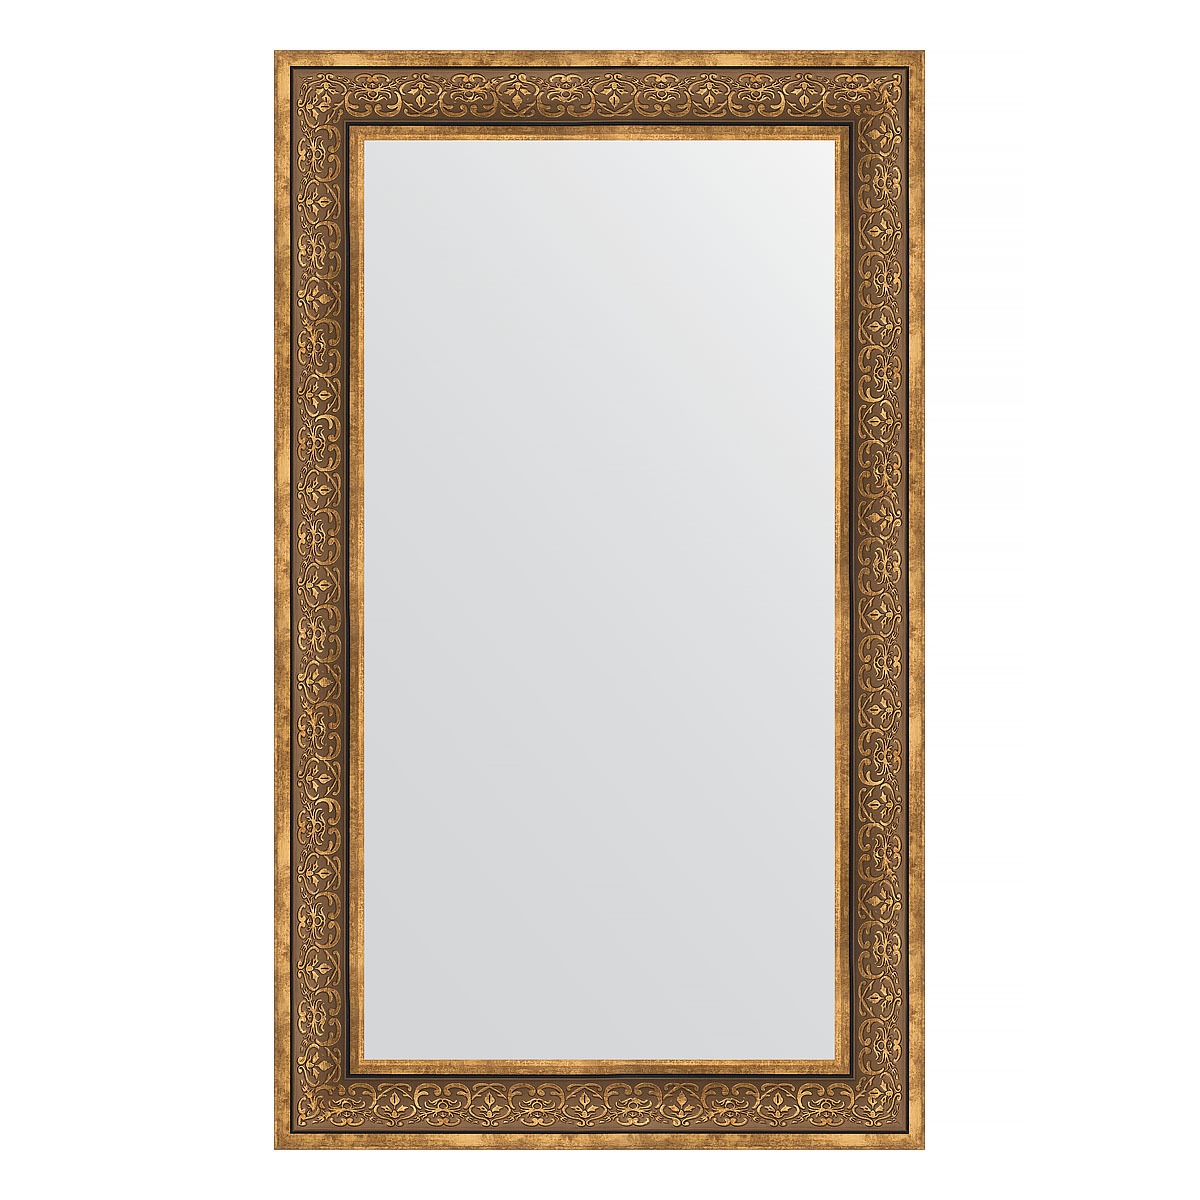 Зеркало в багетной раме Evoform вензель бронзовый 101 мм 73х123 см зеркало 79х109 см вензель бронзовый evoform exclusive by 3474